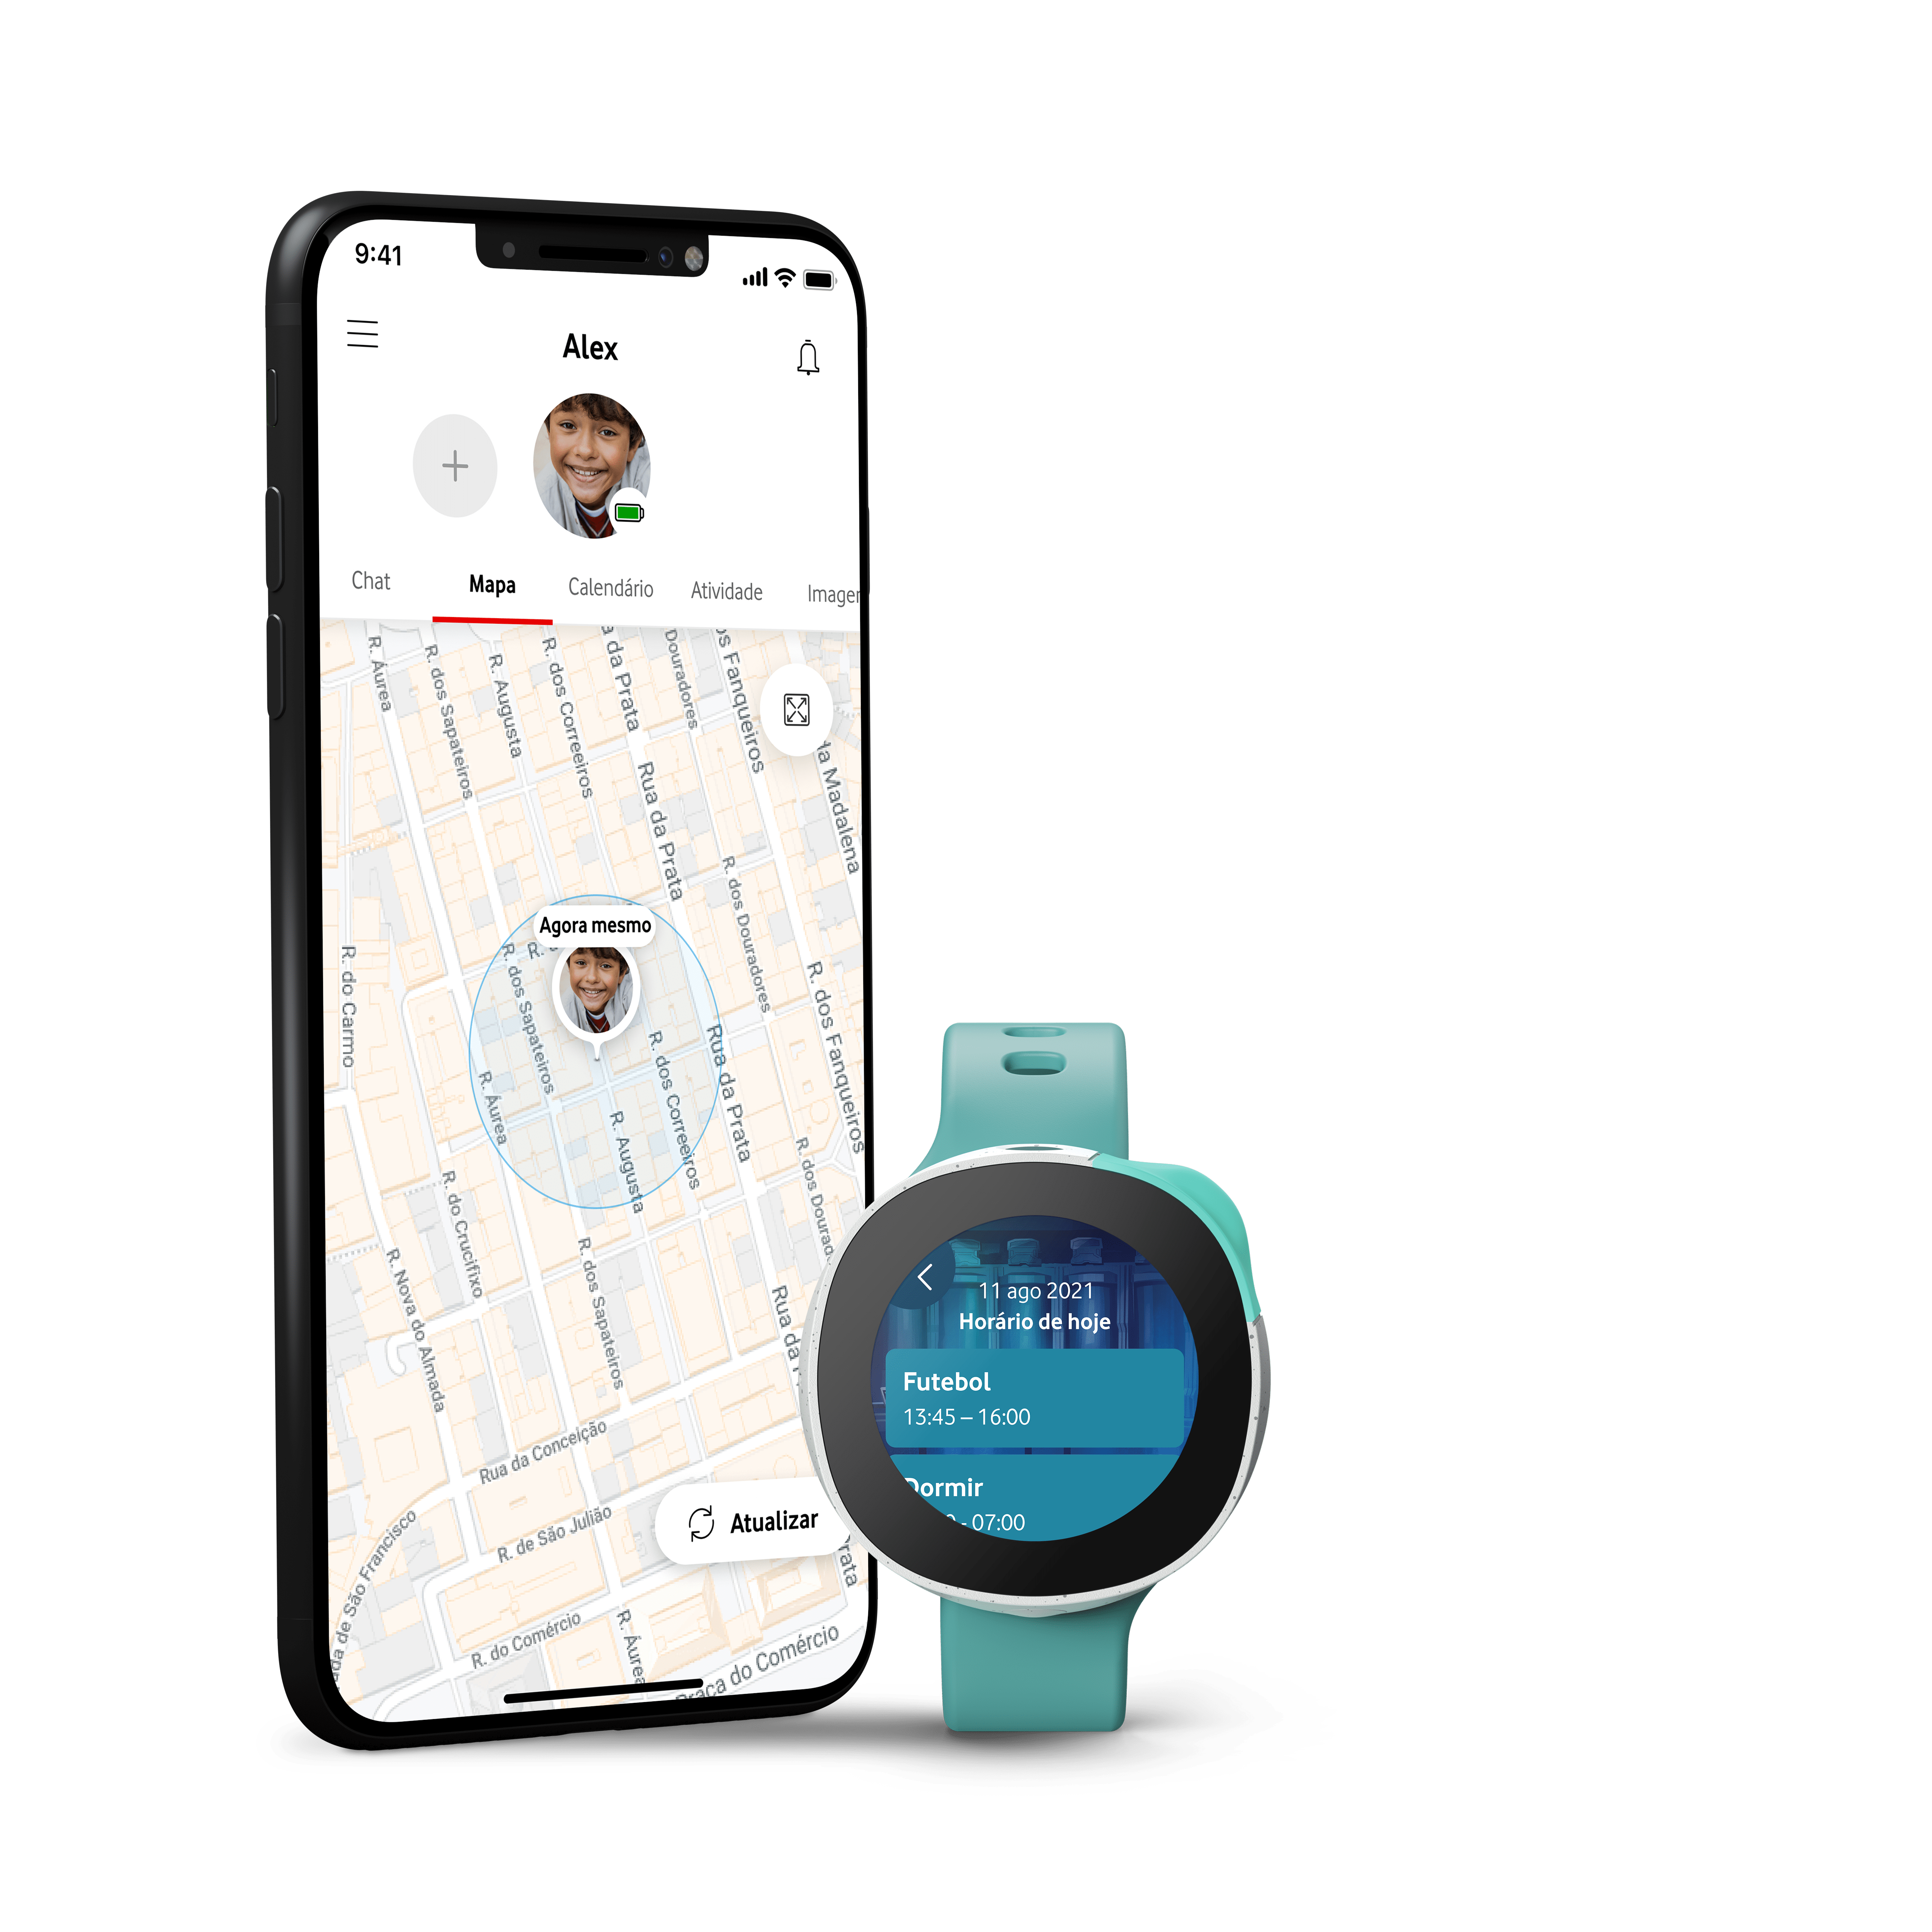 Smartwatch Neo a ser monitorizado num smartphone via GPS através da App Vodafone Smart 